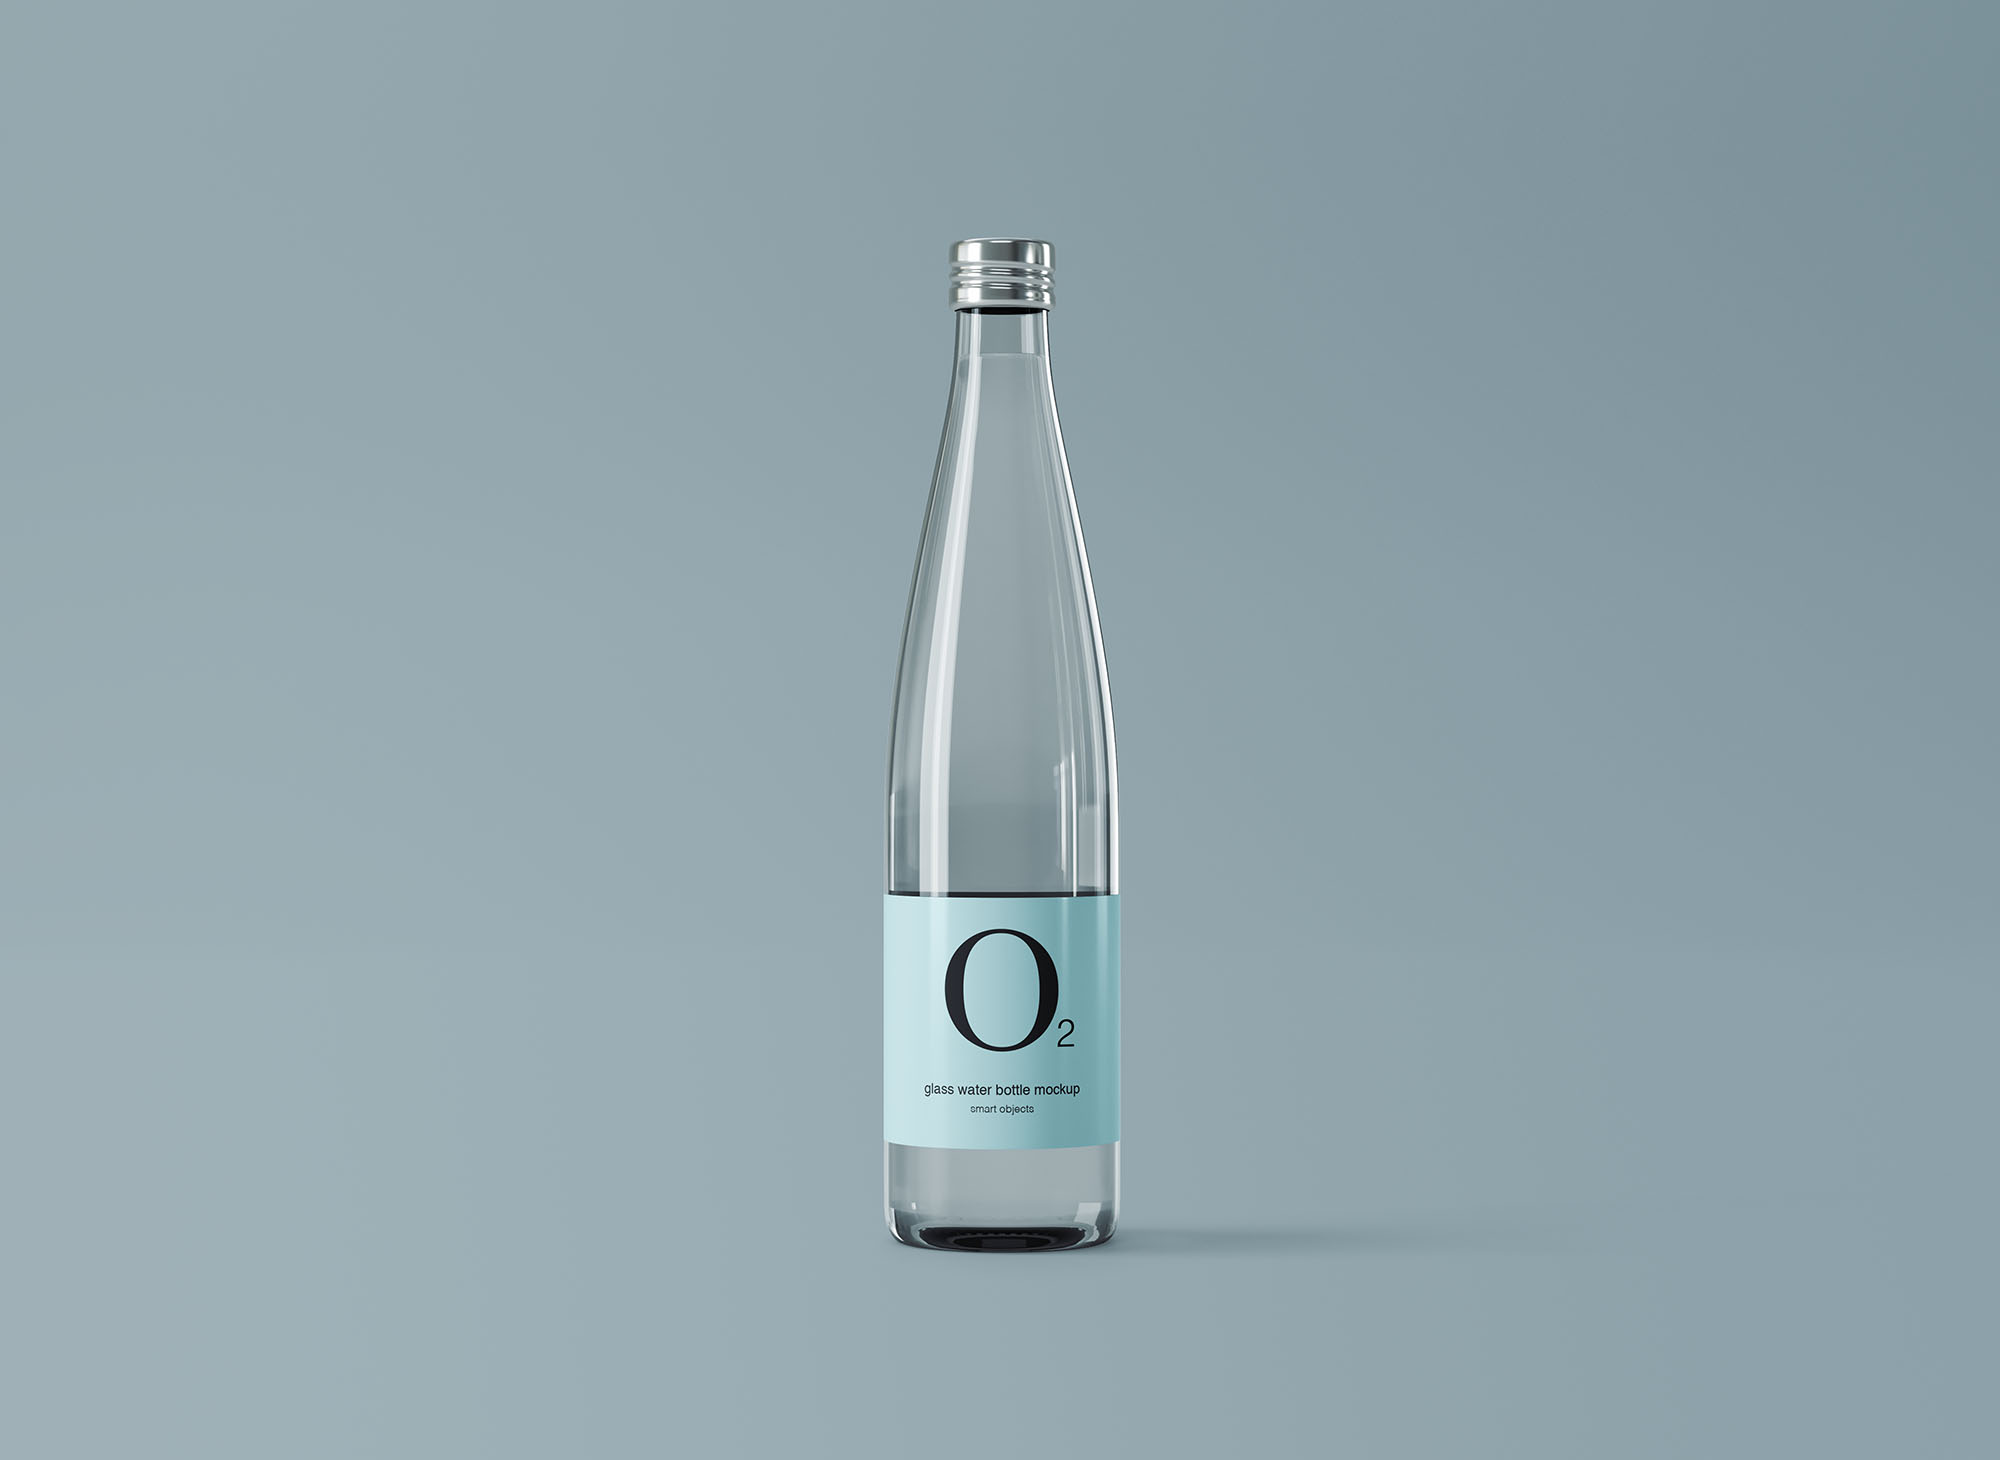 极简设计风格玻璃纯净水矿泉水瓶外观设计图第一素材精选 Minimal Glass Water Bottle Mockup插图